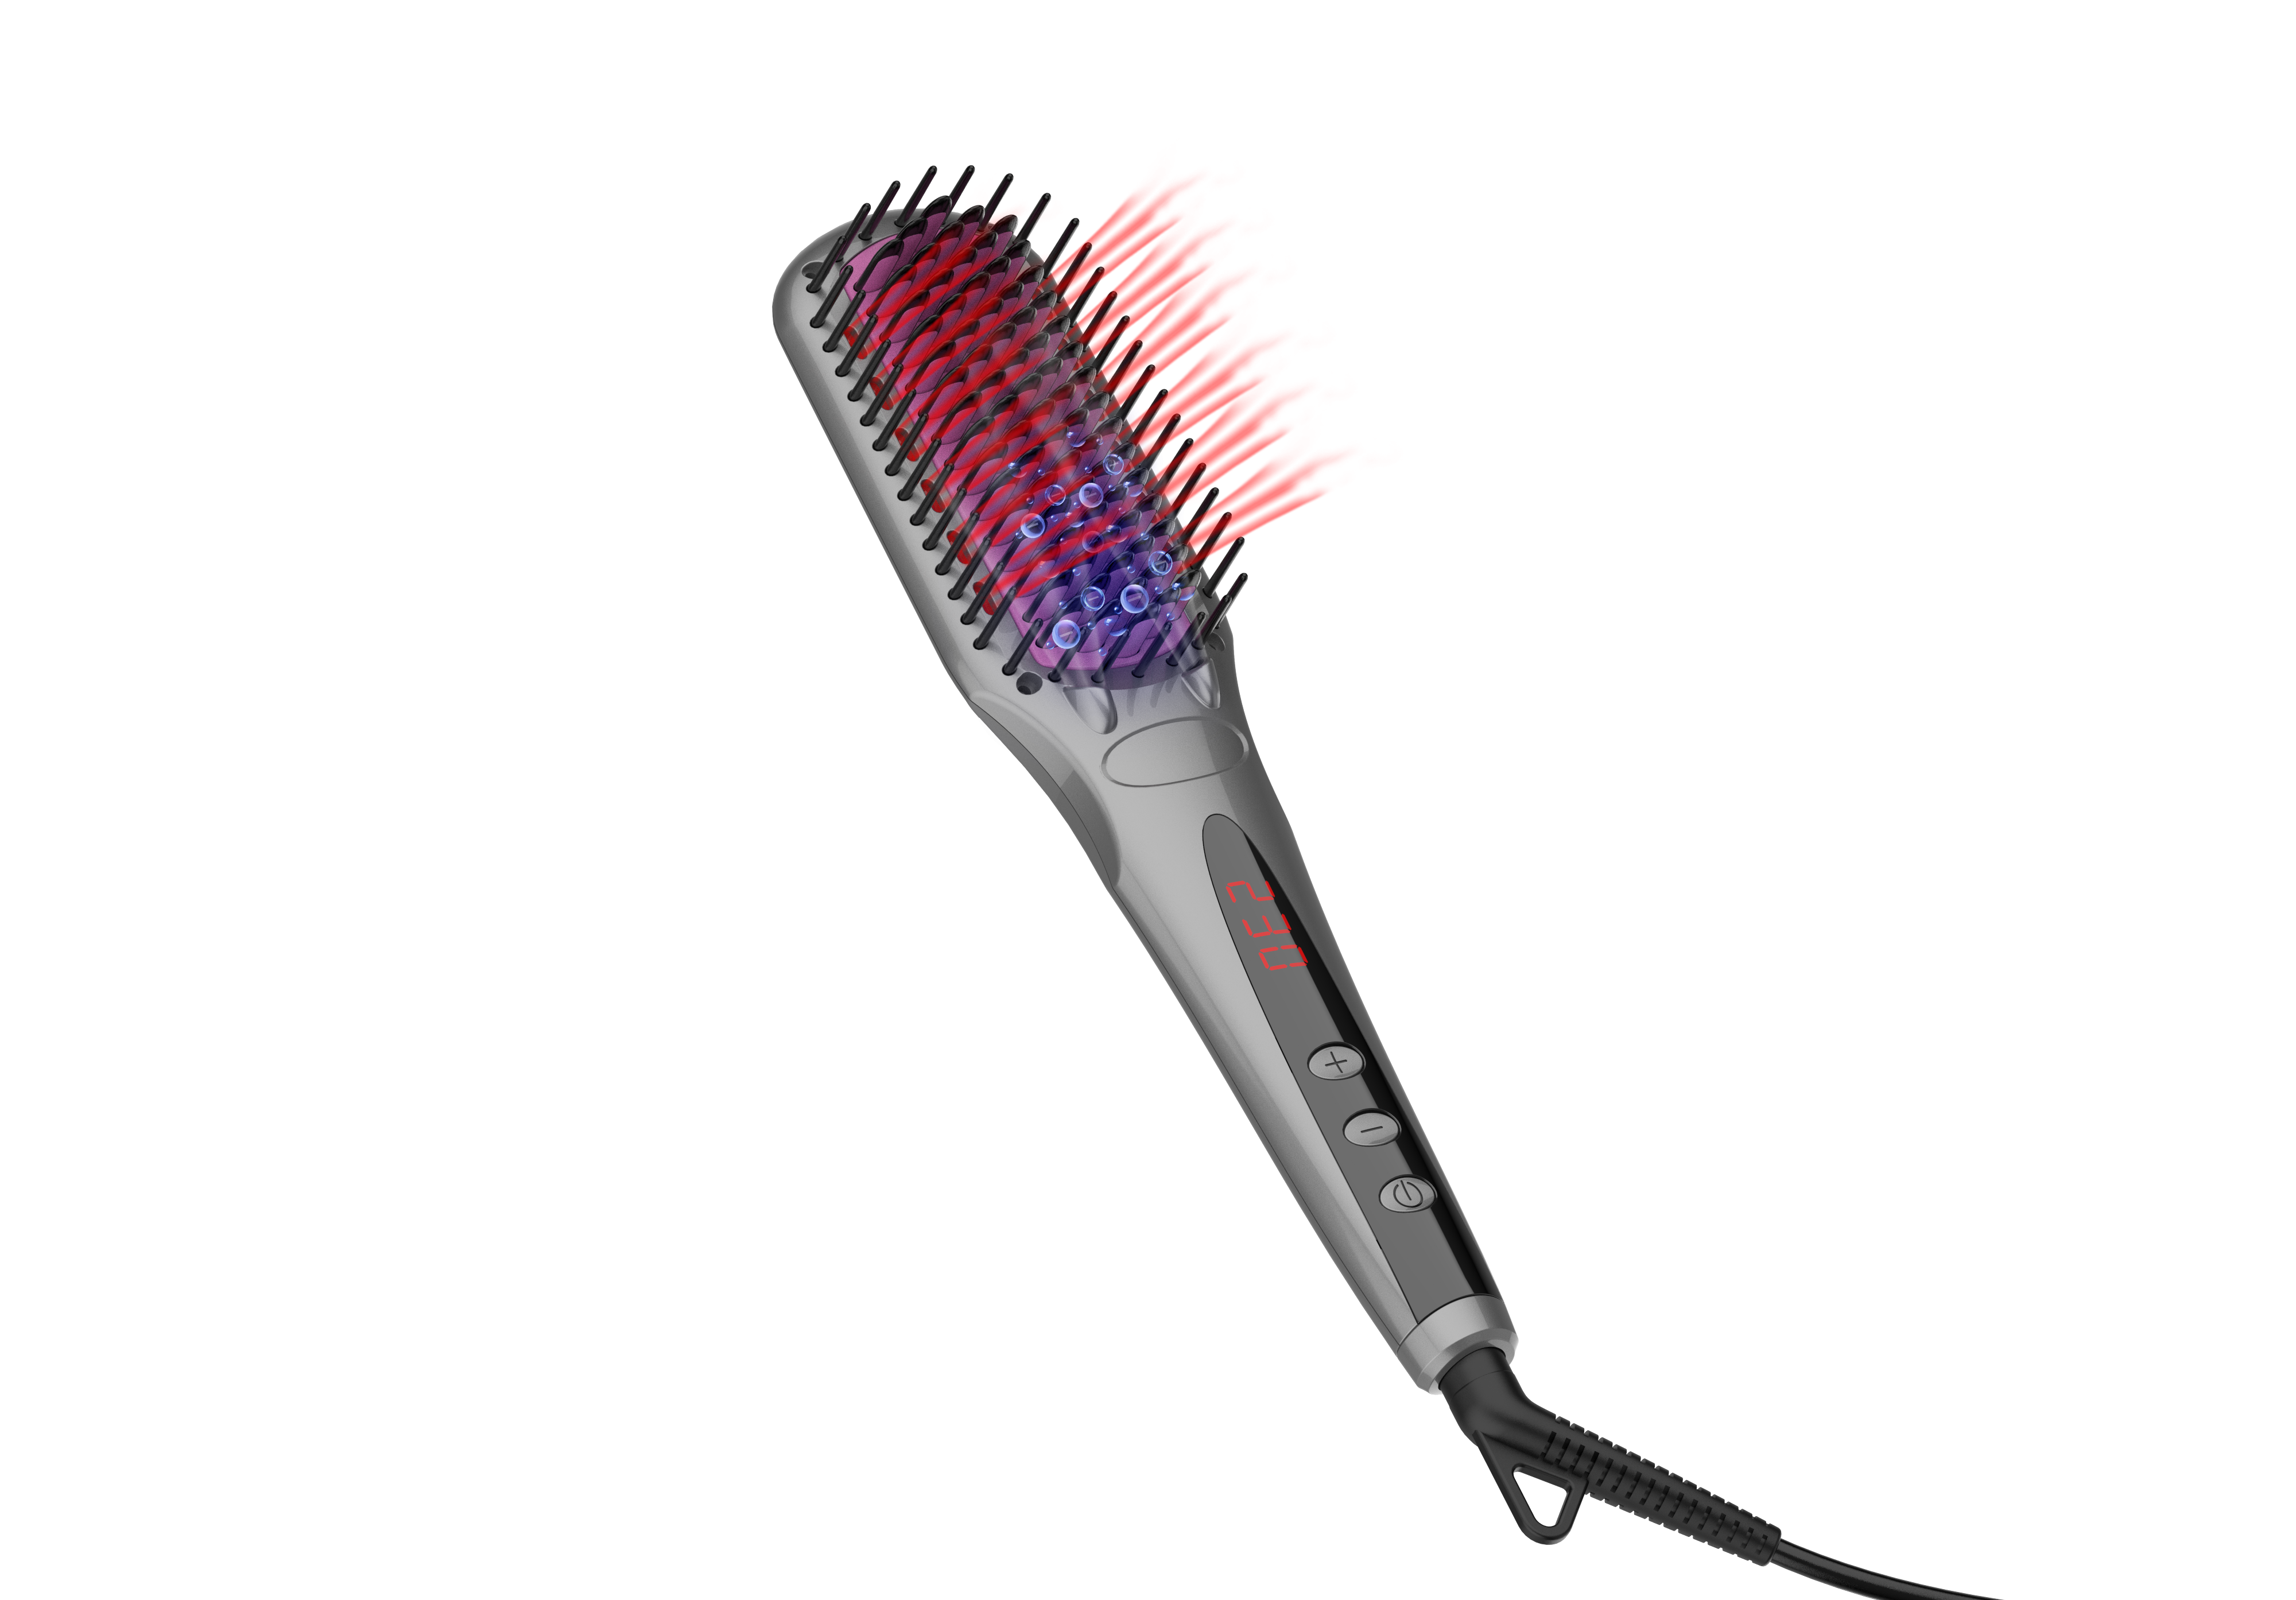 Brosse à cheveux infrarouge automatique à lisser, pinceau de cheveux chaud électrique portable, fabricant professionnel de coiffure 2 en 1